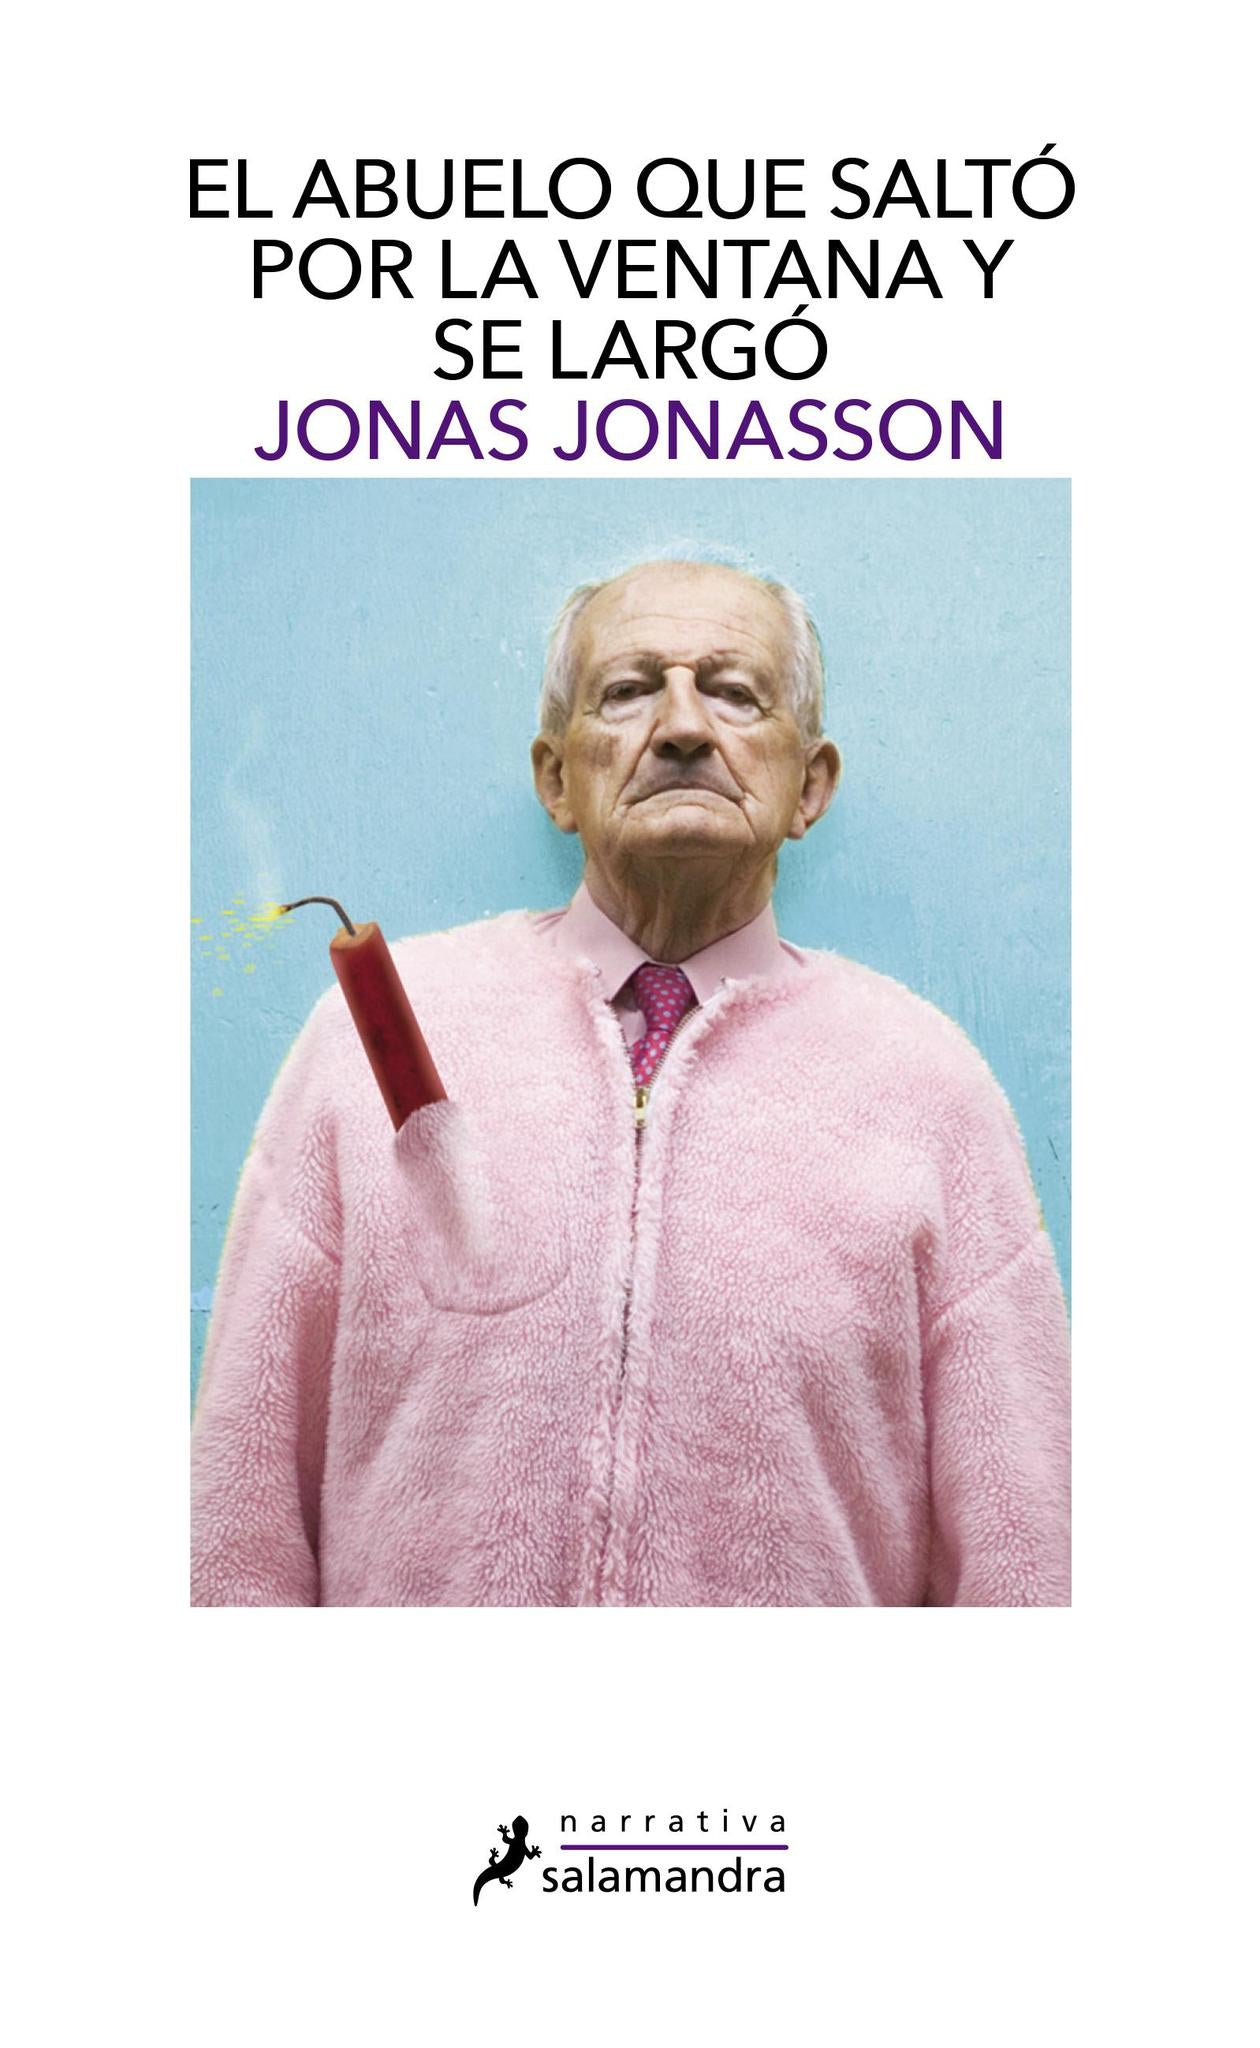 El abuelo que salto por la ventana y se largo - Jonas Jonasson